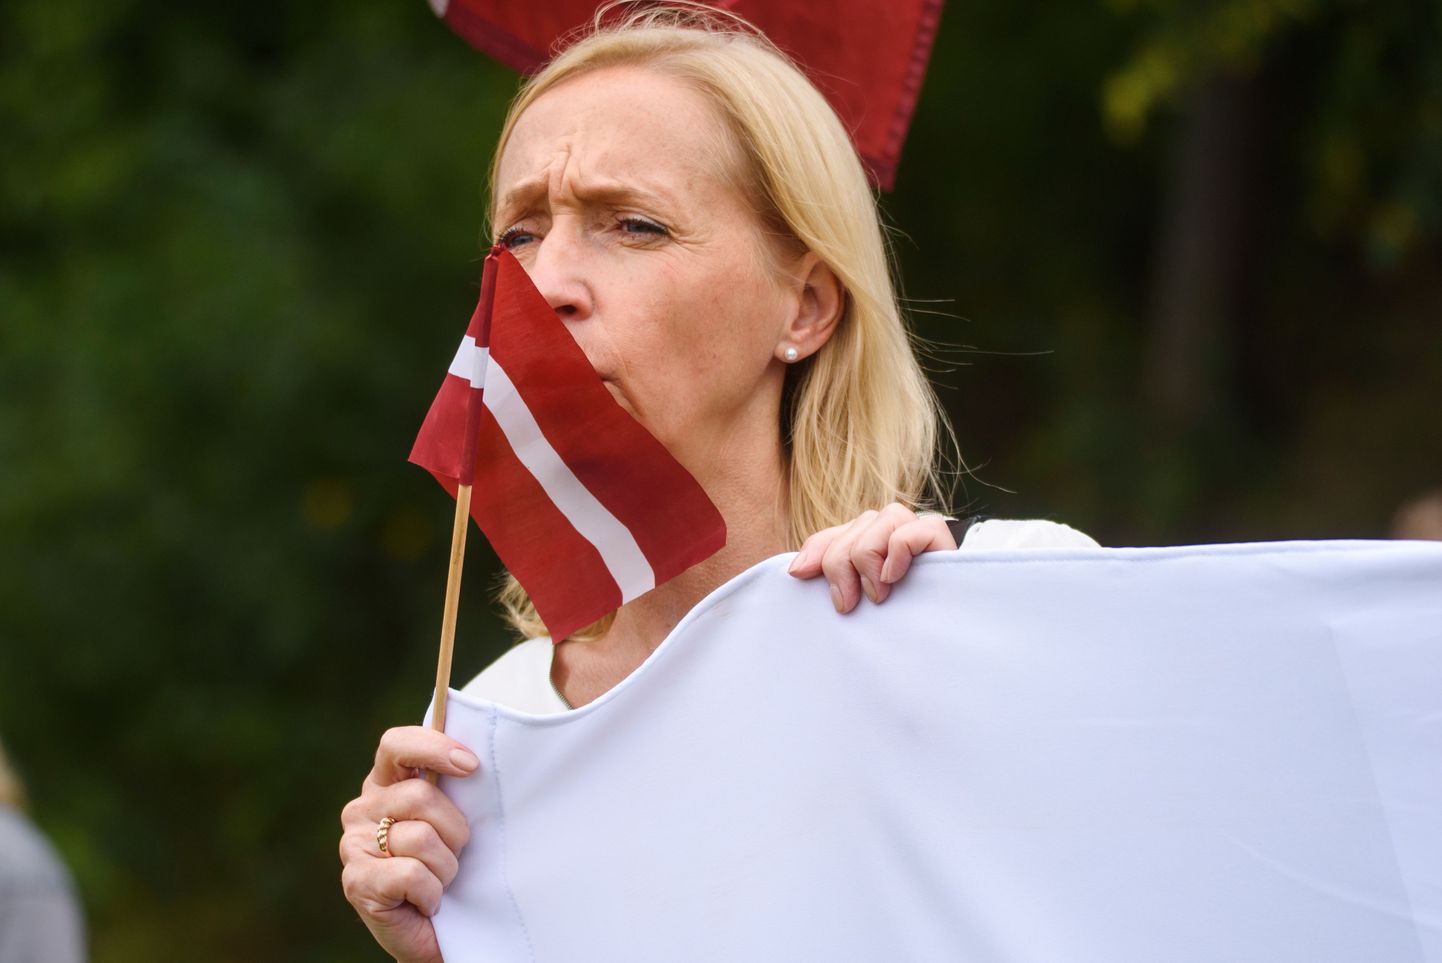 Väliministeeriumi teatel langetab Läti valitsus otsuse Balti riikidega piiriülese liikumise kohta reedesel erakorralisel istungil.